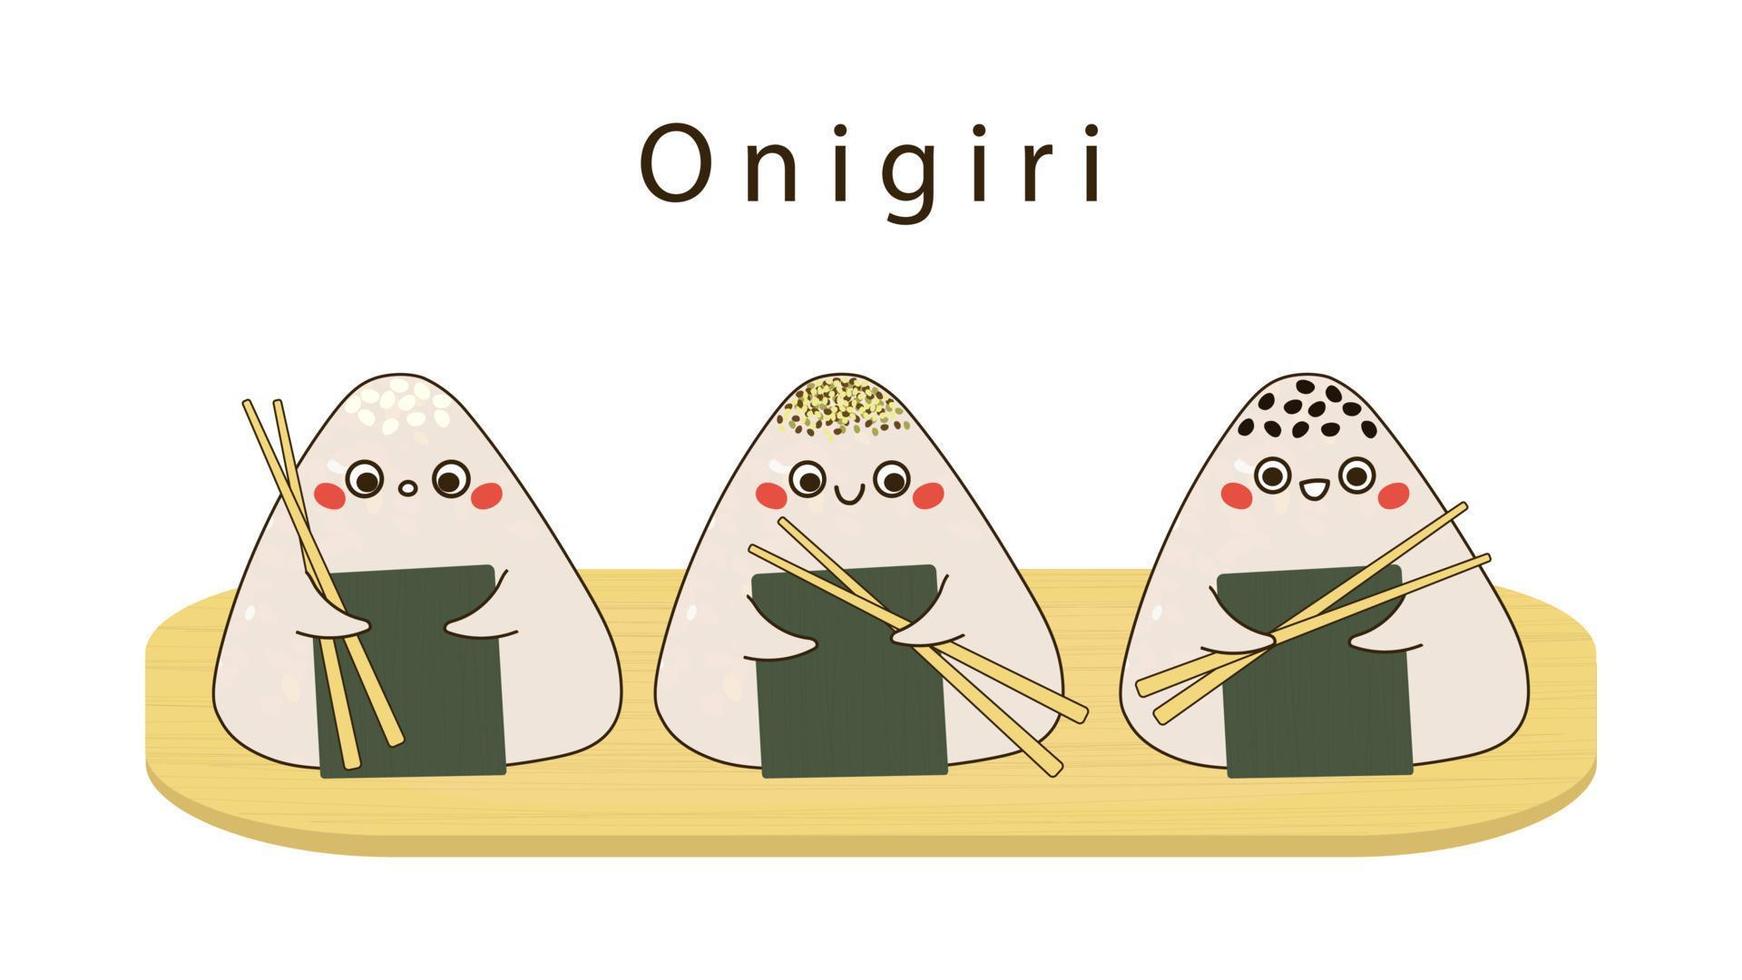 onigiri-zeichen mit essstäbchen in der handvektorillustration vektor